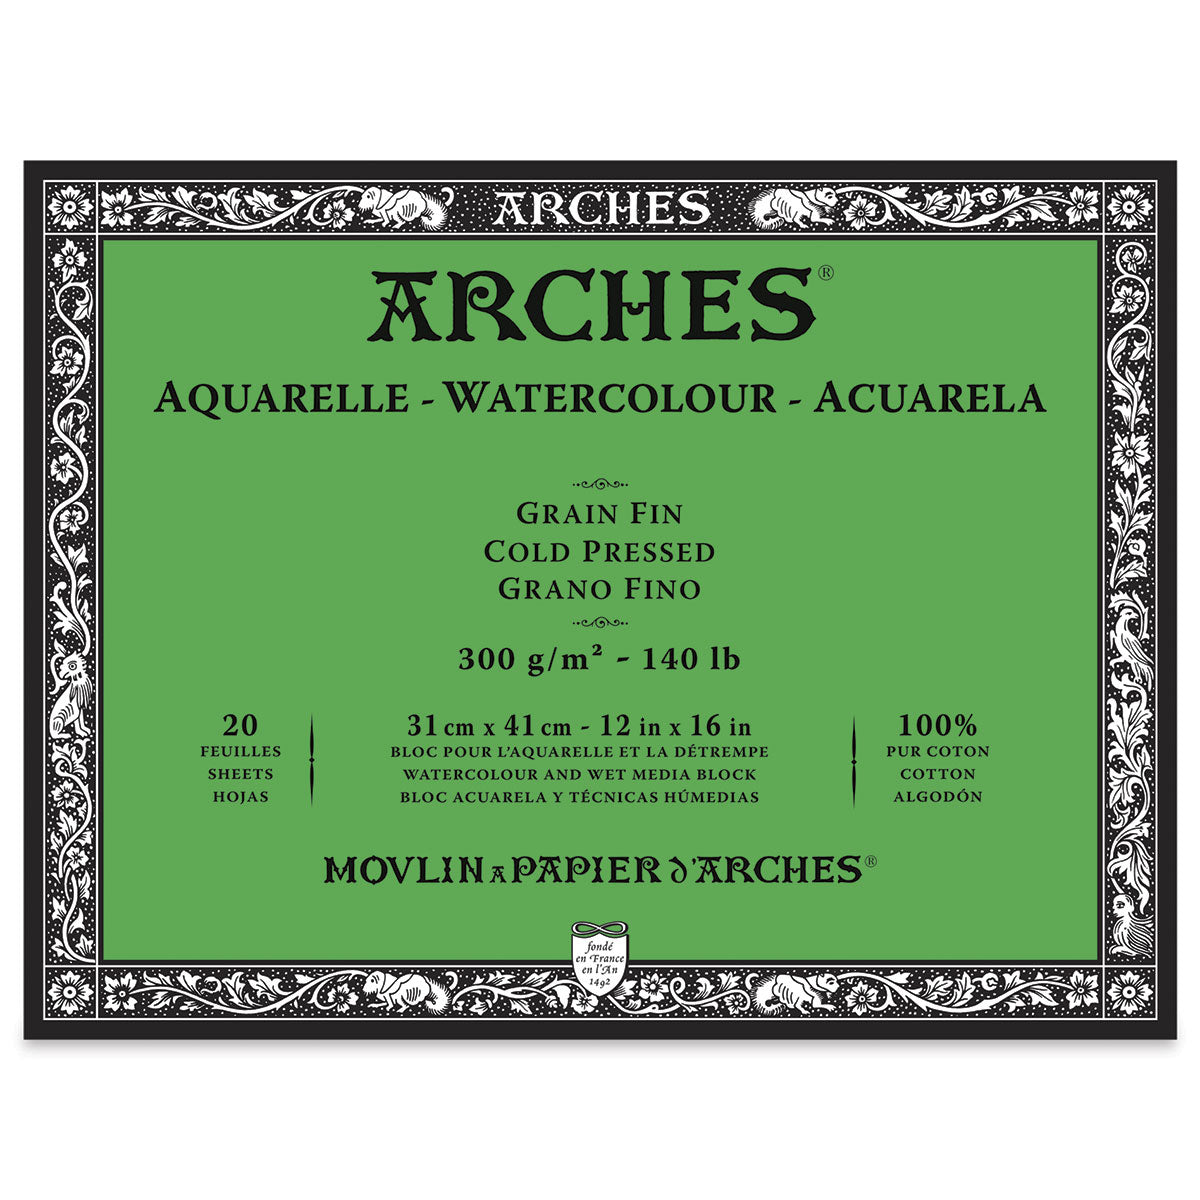 ARCHES - Bloc papier aquarelle - 300g - 12 Feuilles - Arches